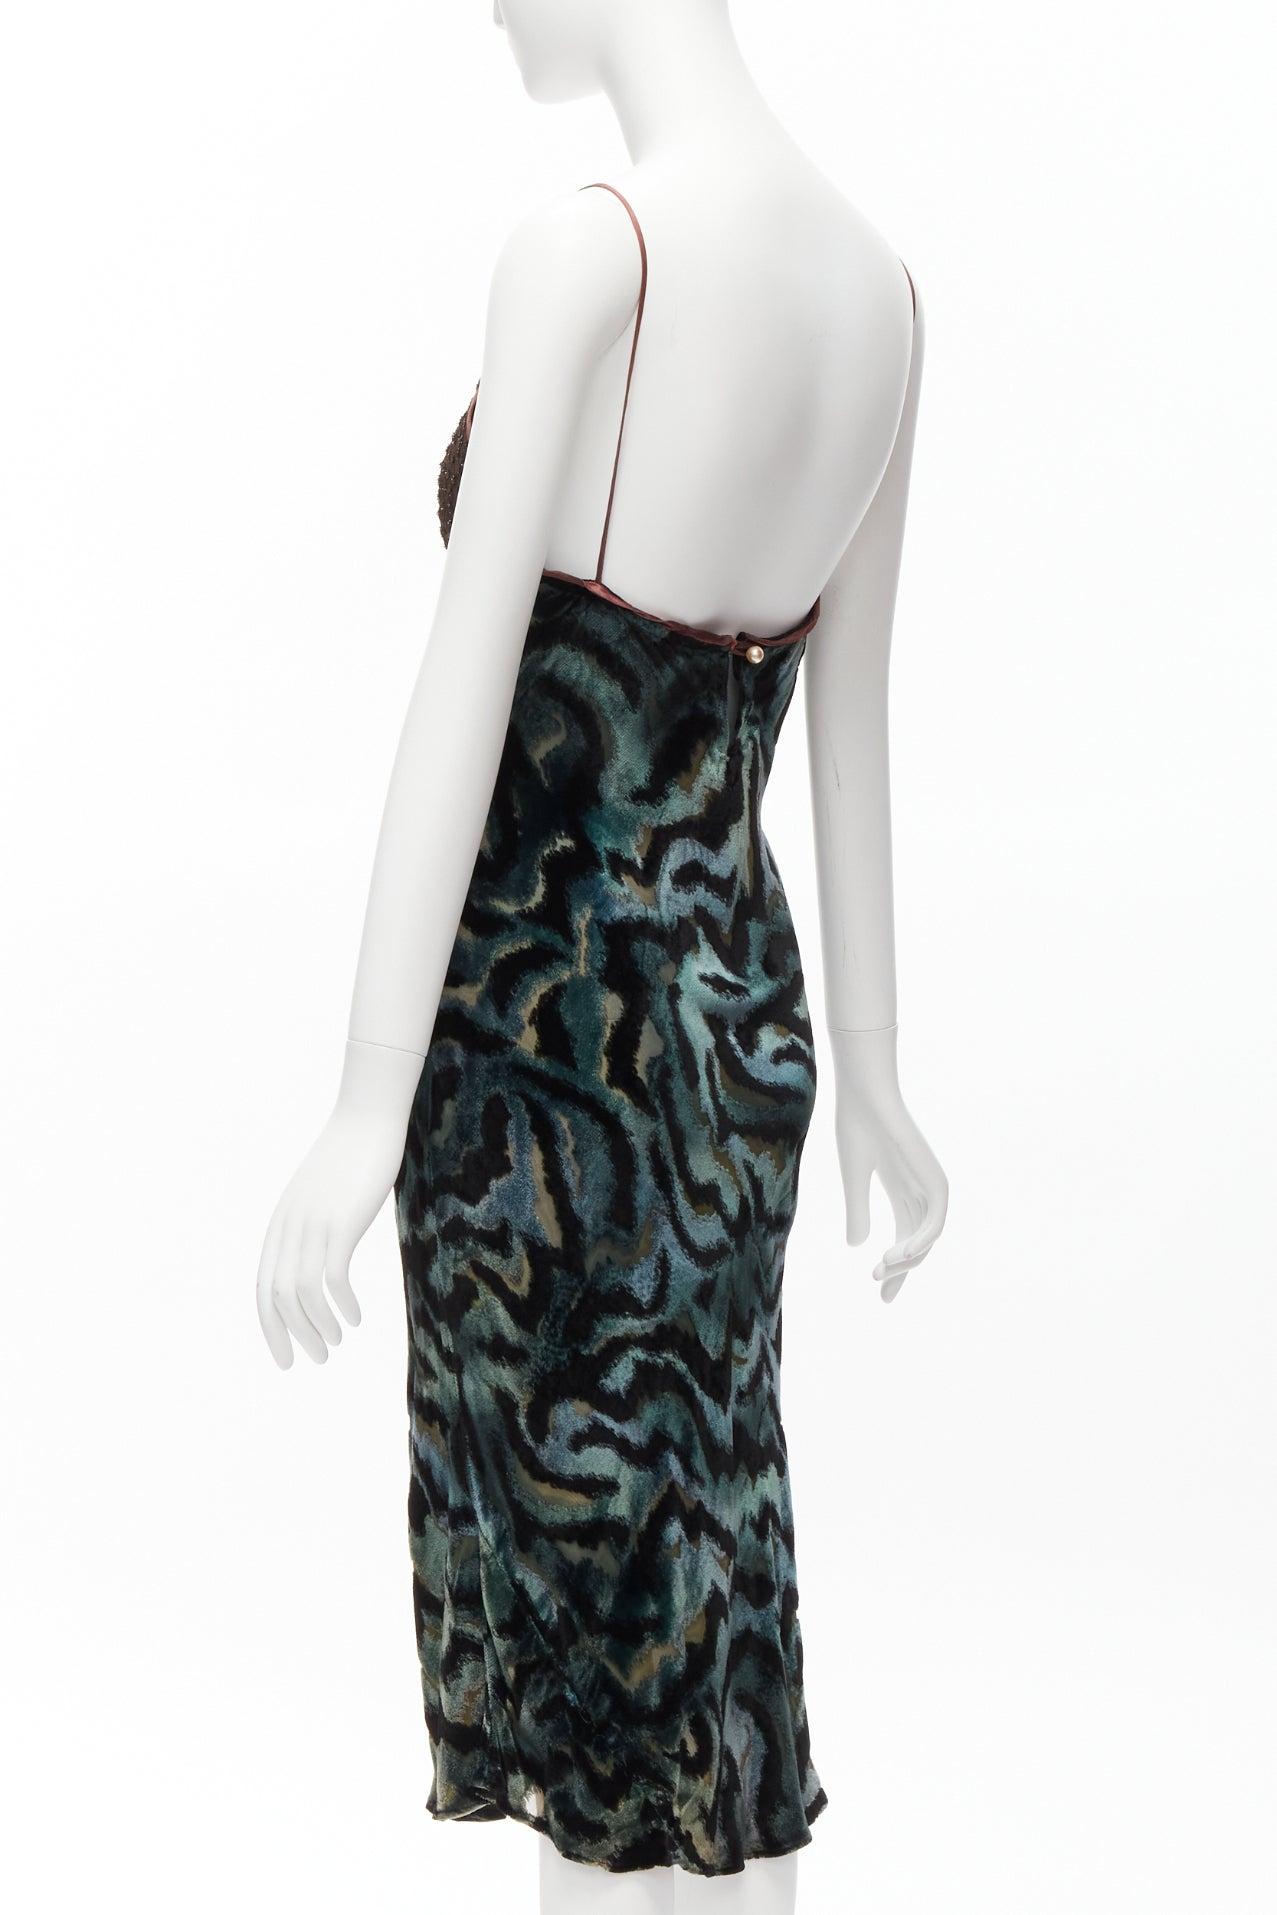 VOYAGE INVEST IN THE ORIGINAL LONDON green swirl velvet slip dress For Sale 1